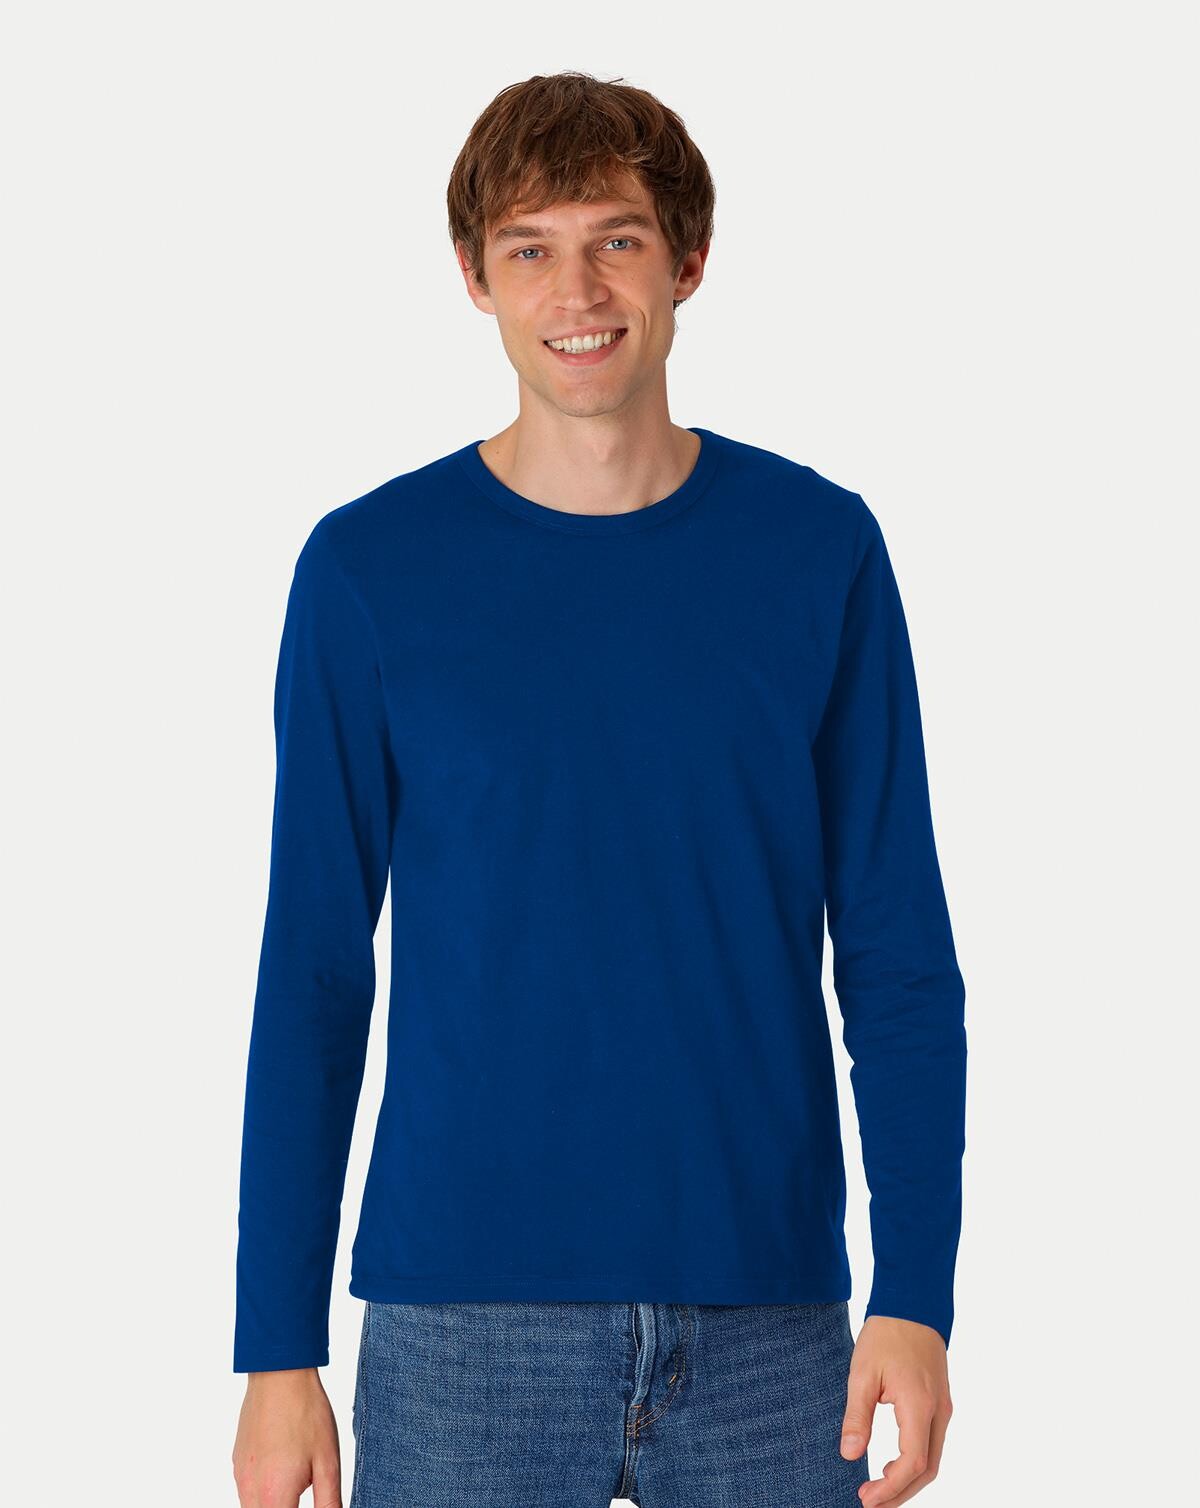 Neutral Organic - Mens Long Sleeve T-shirt (Kongeblå, 3XL)